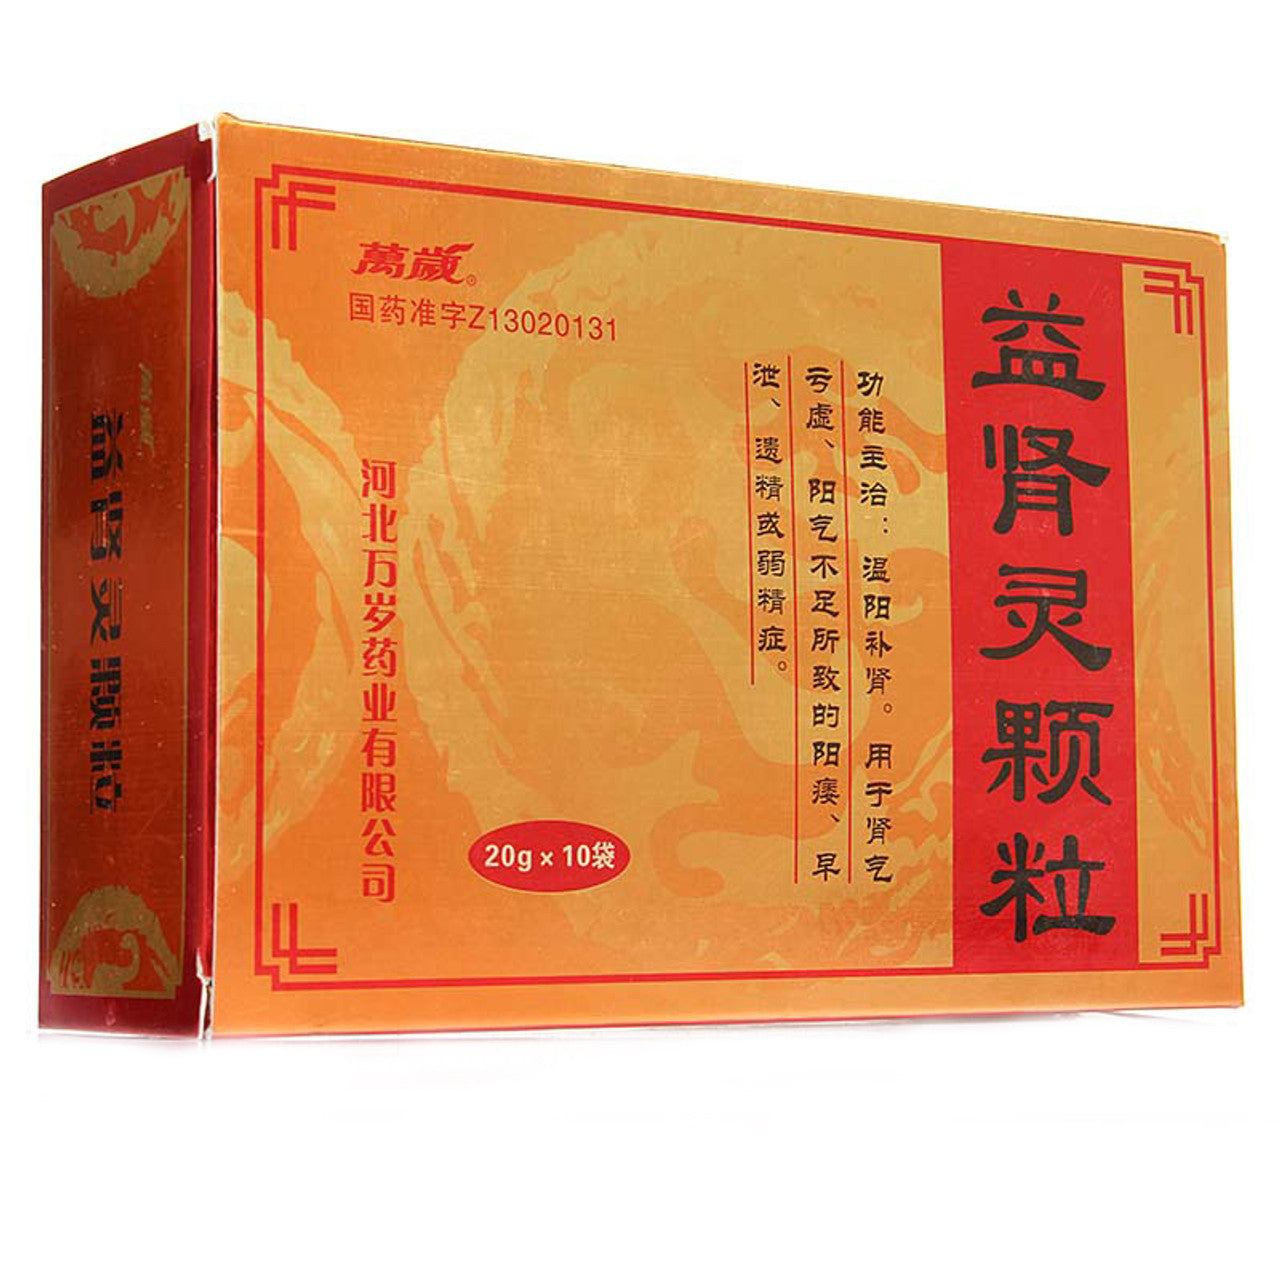 (10 sachets*3 boxes/lot). Yishengling Granules or Yishengling Keli For Tonifying The Kidney & Yang. Yi Shen Ling Ke Li